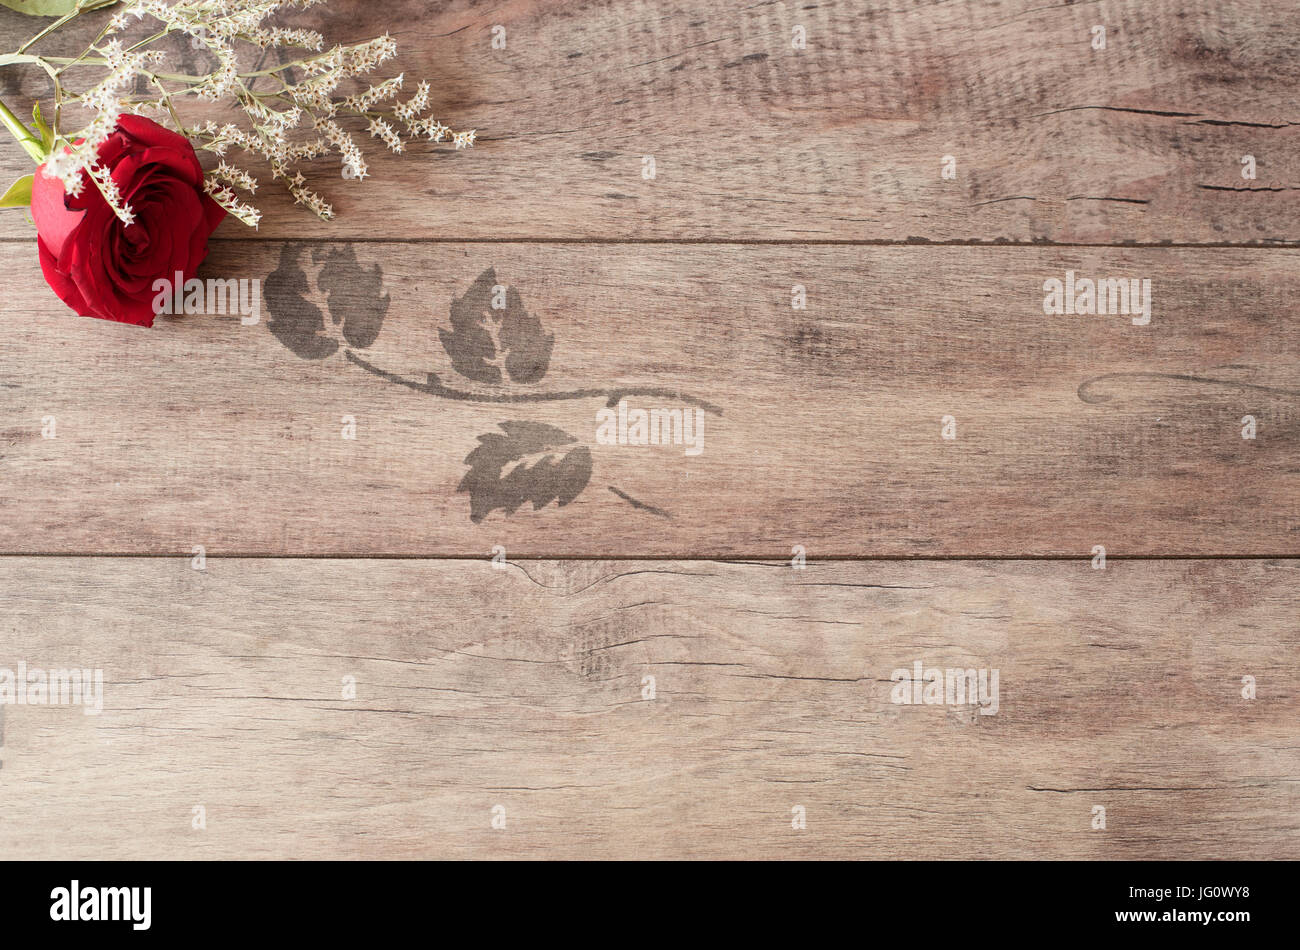 Floral frame avec une belle rose rouge sur fond de bois. Copier l'espace. Carte-cadeau, mariage, la saint valentin ou la fête des mères background Banque D'Images